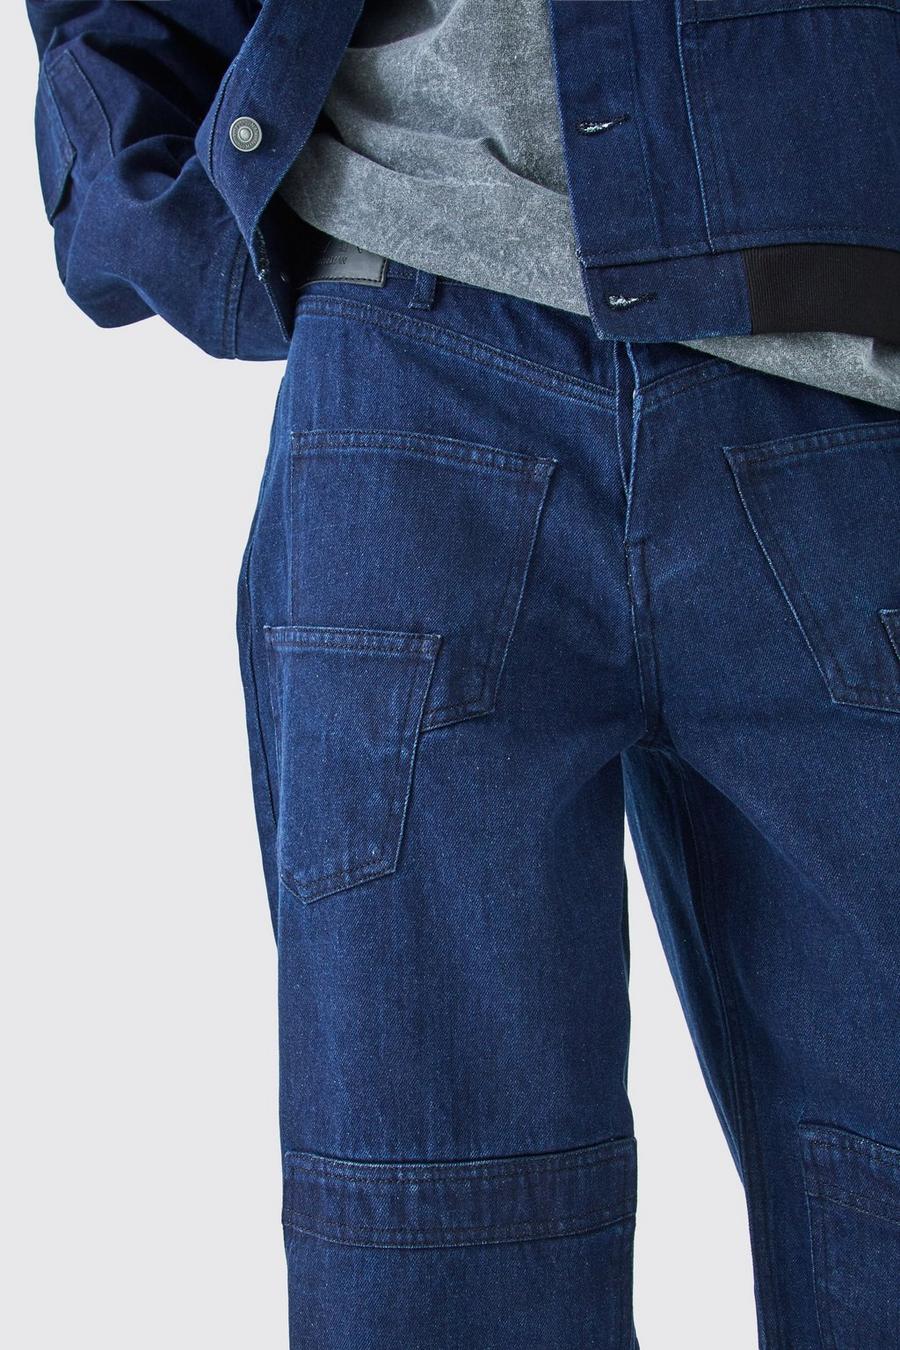 Jeans Tall extra comodi in denim rigido con tasche Carpenter, Indigo